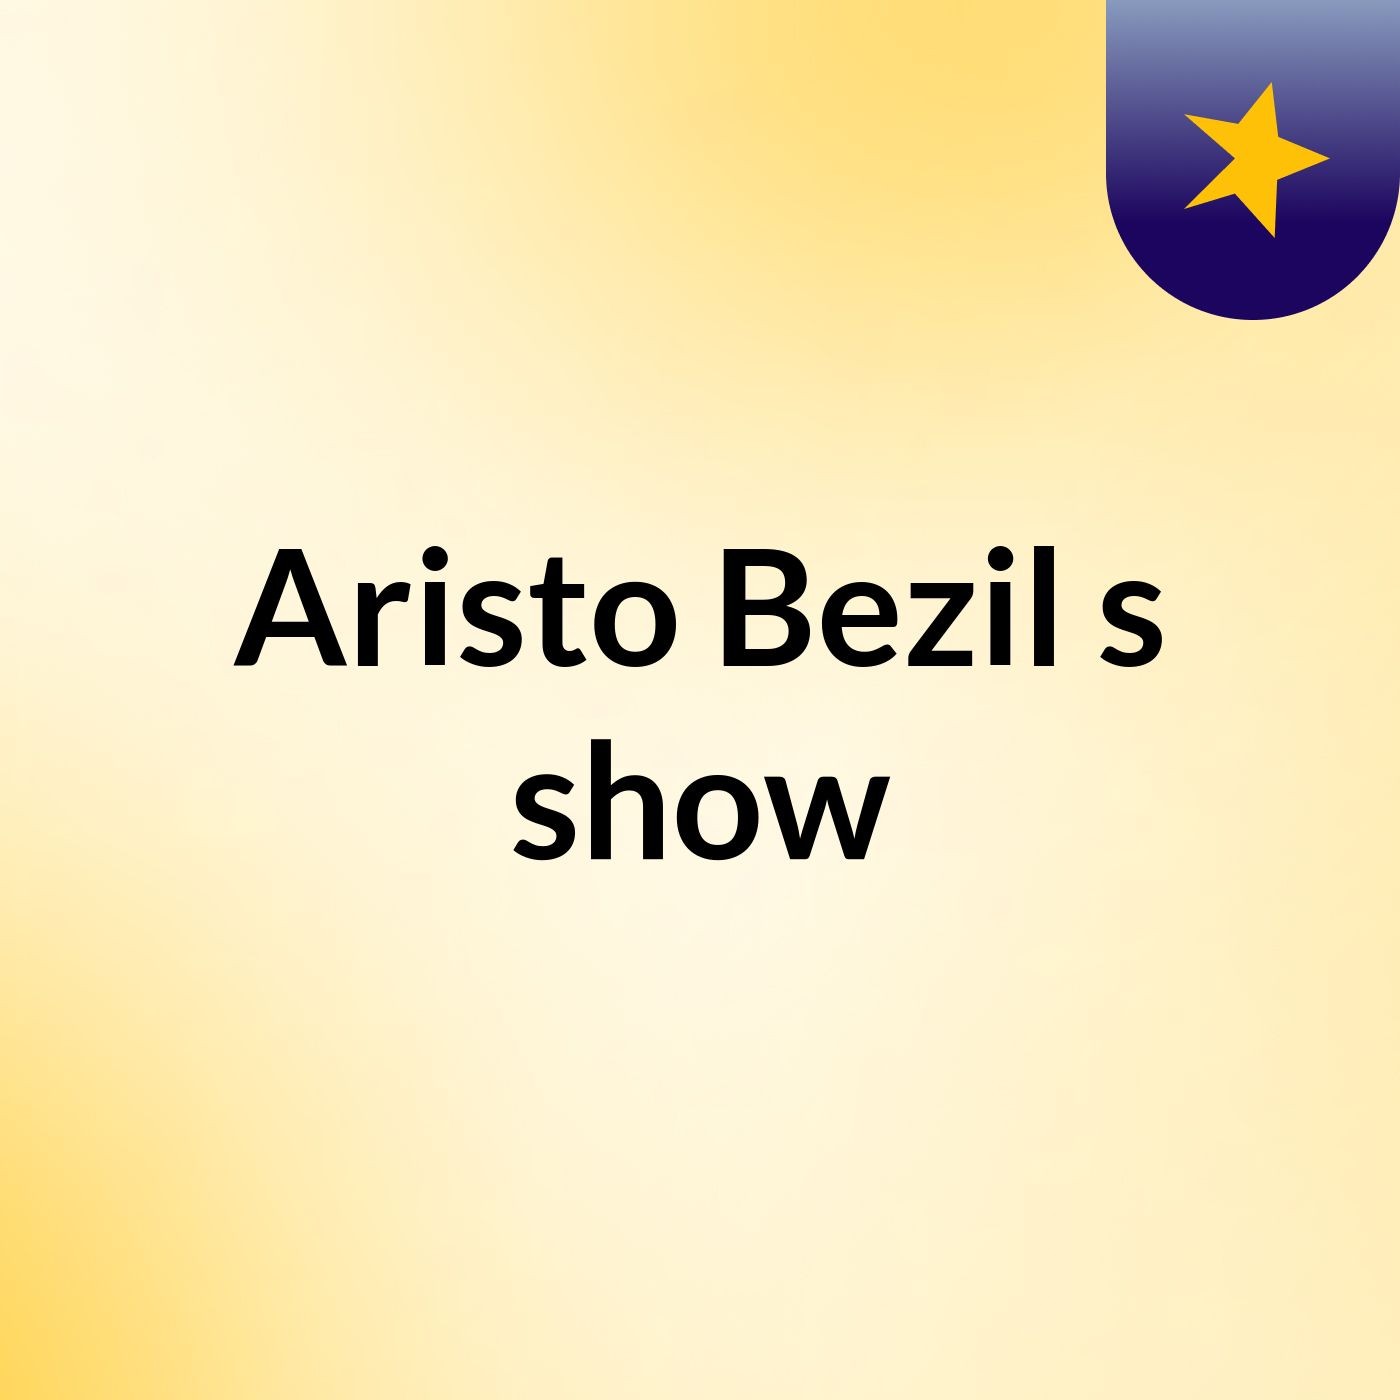 Aristo Bezil's show